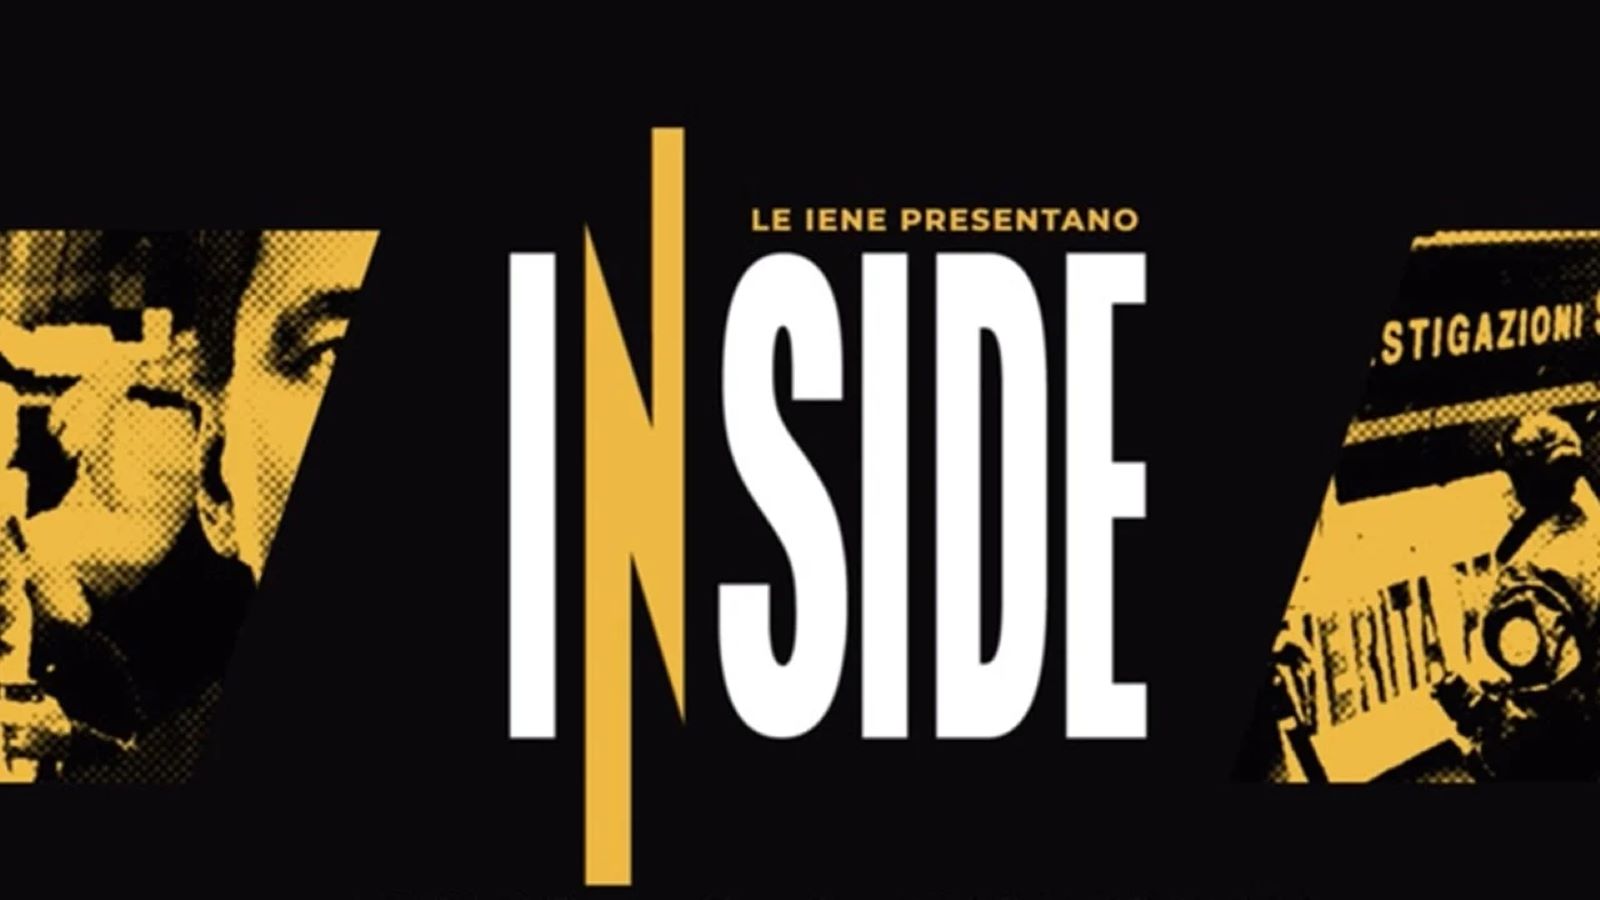 Le Iene presentano: Inside, le infinite sfumature dell'amore stasera 26 marzo su Italia 1